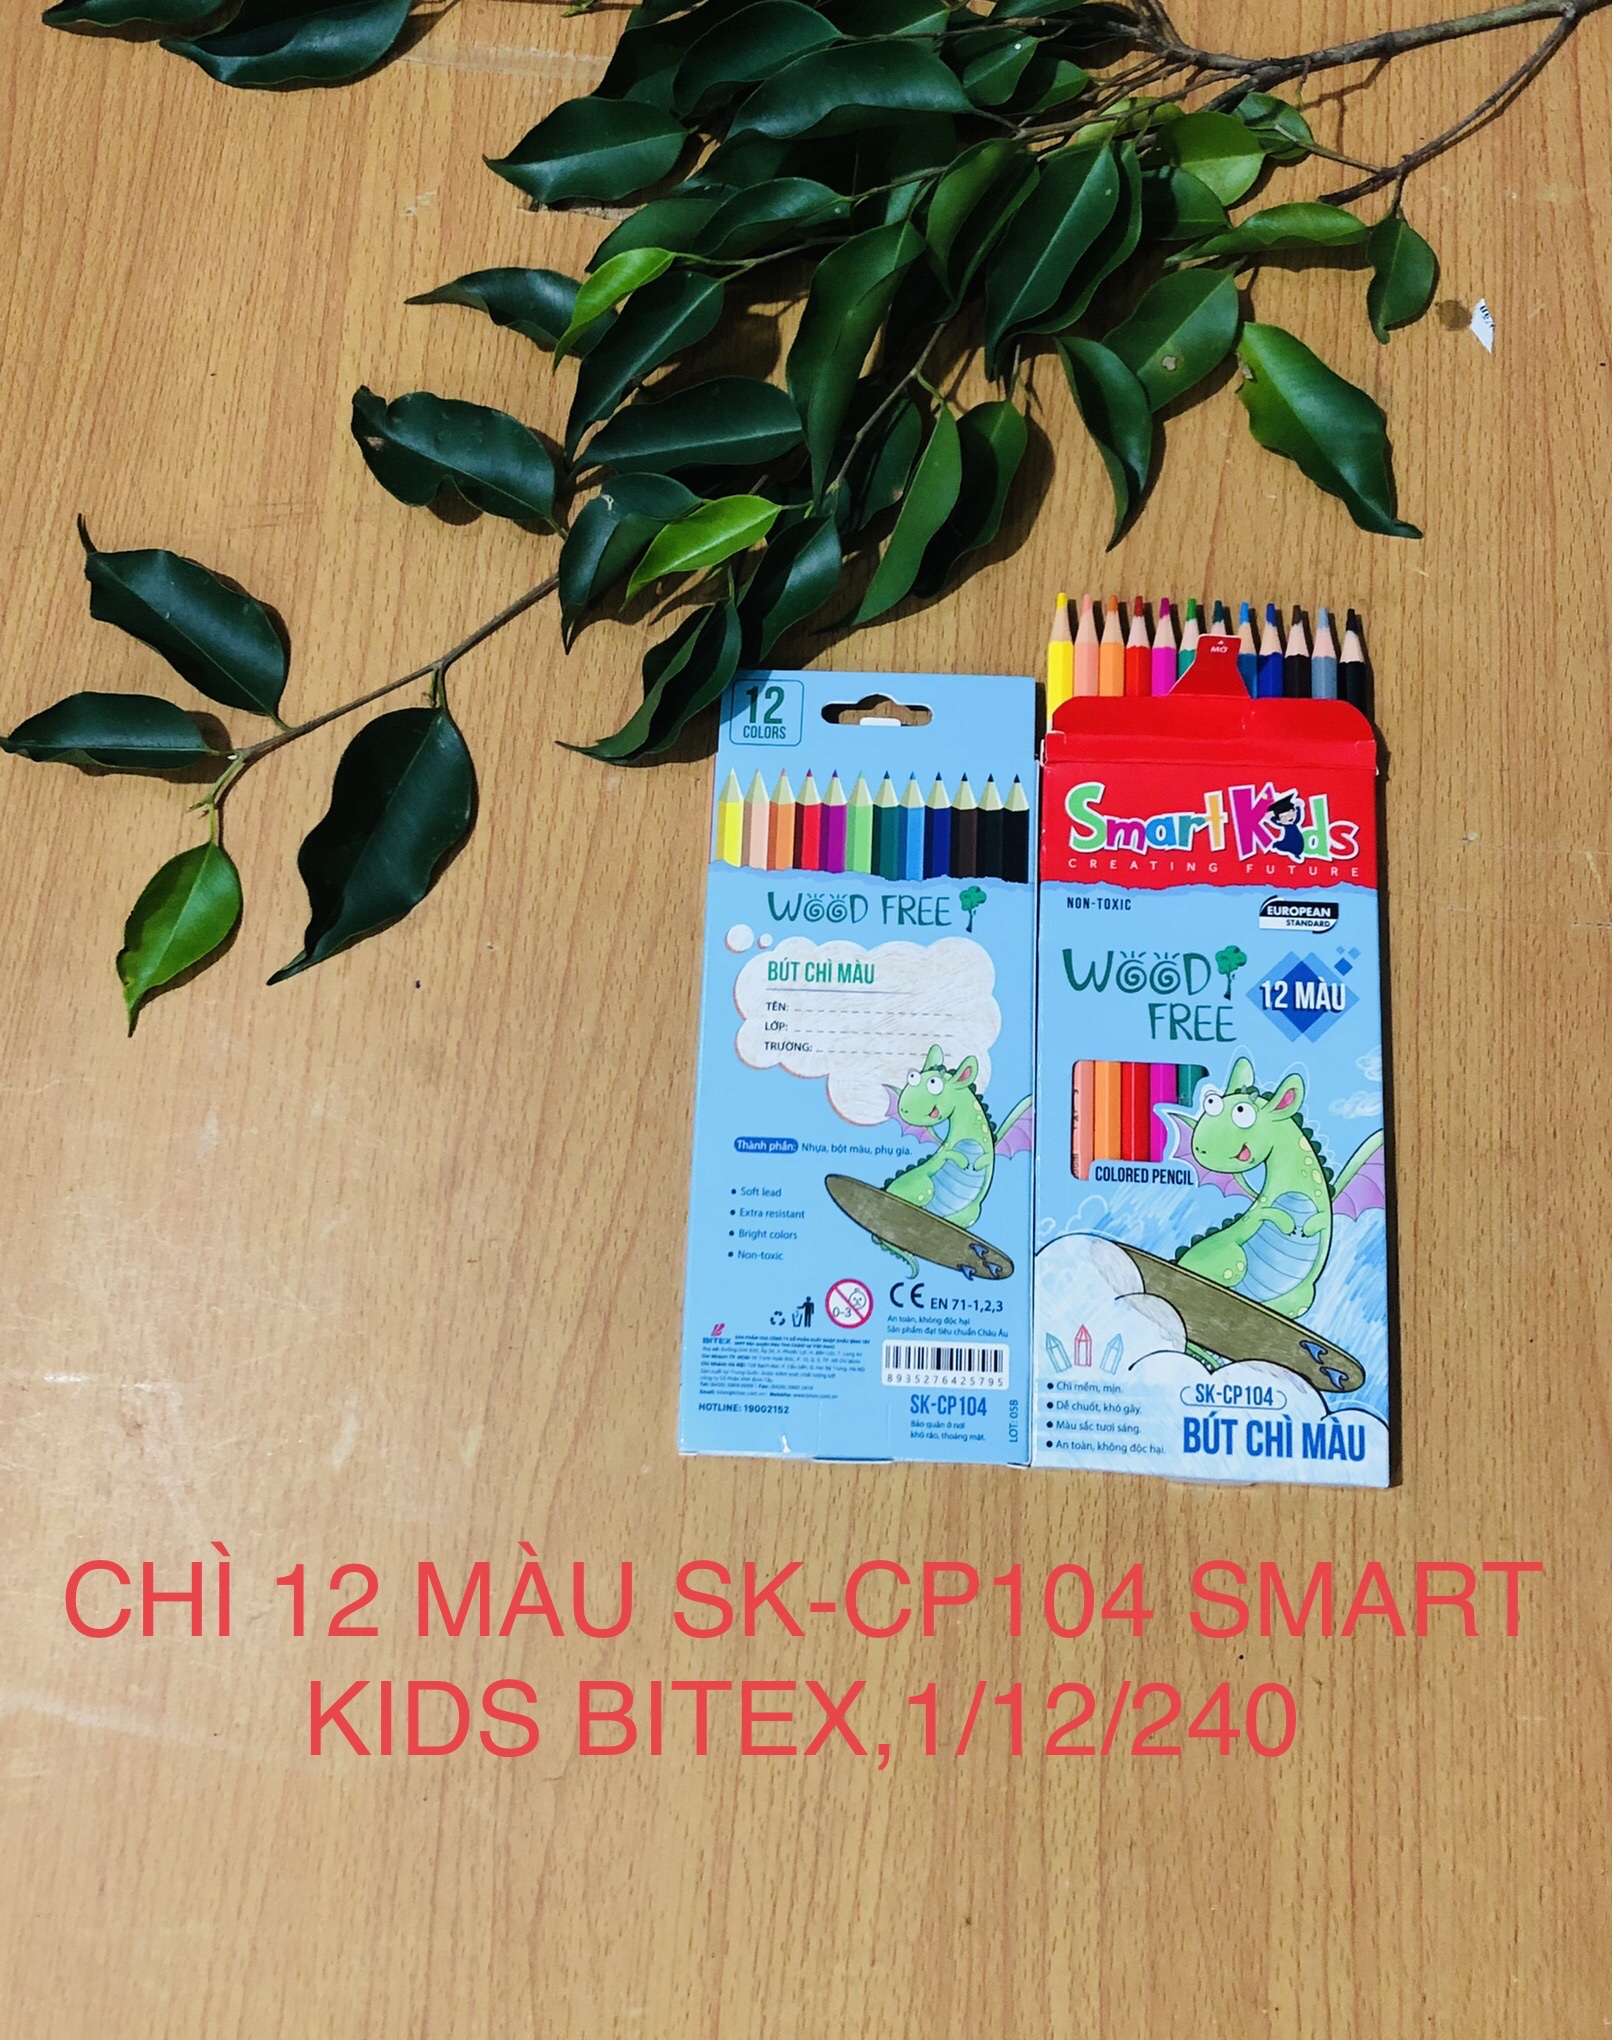 CHÌ 12 MÀU SK-CP104 SMART KIDS BITEX- PHÙ HỢP CHO BÉ TỪ 3-10 TUỔI